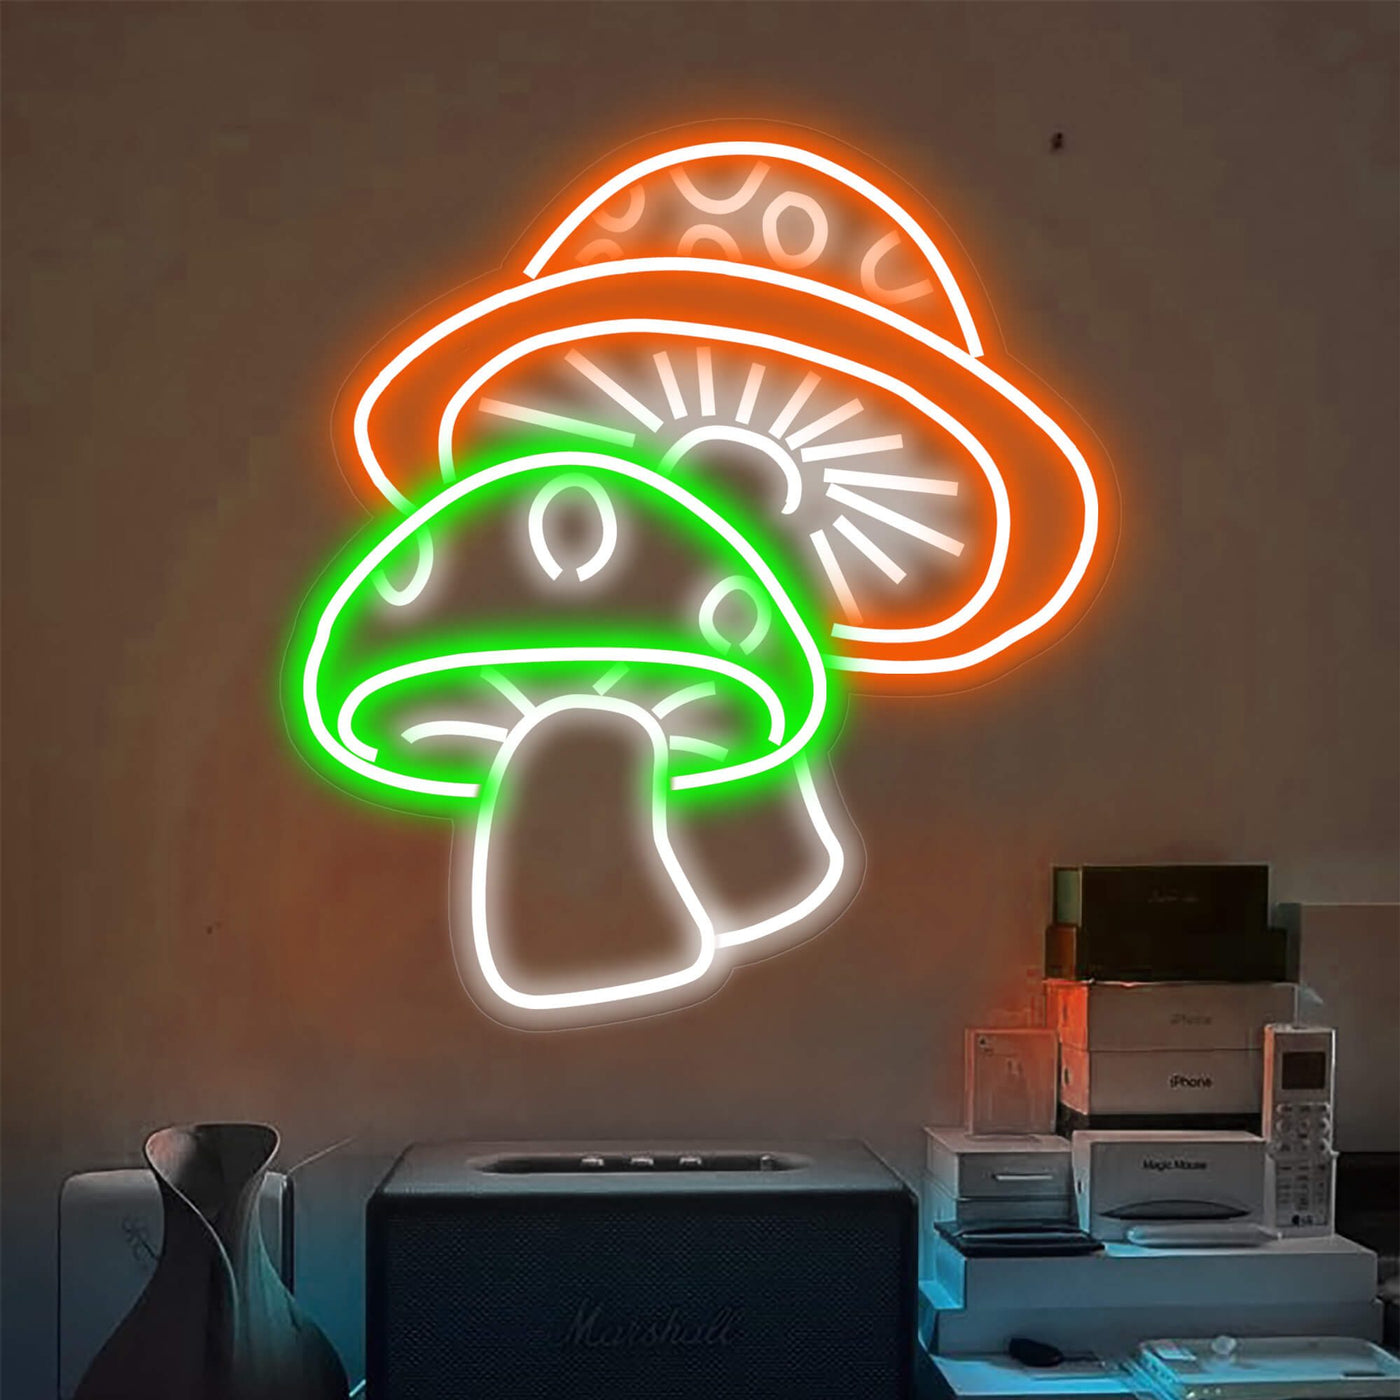 Two Aesthetic Mushroom Neon Sign Led Light Orange